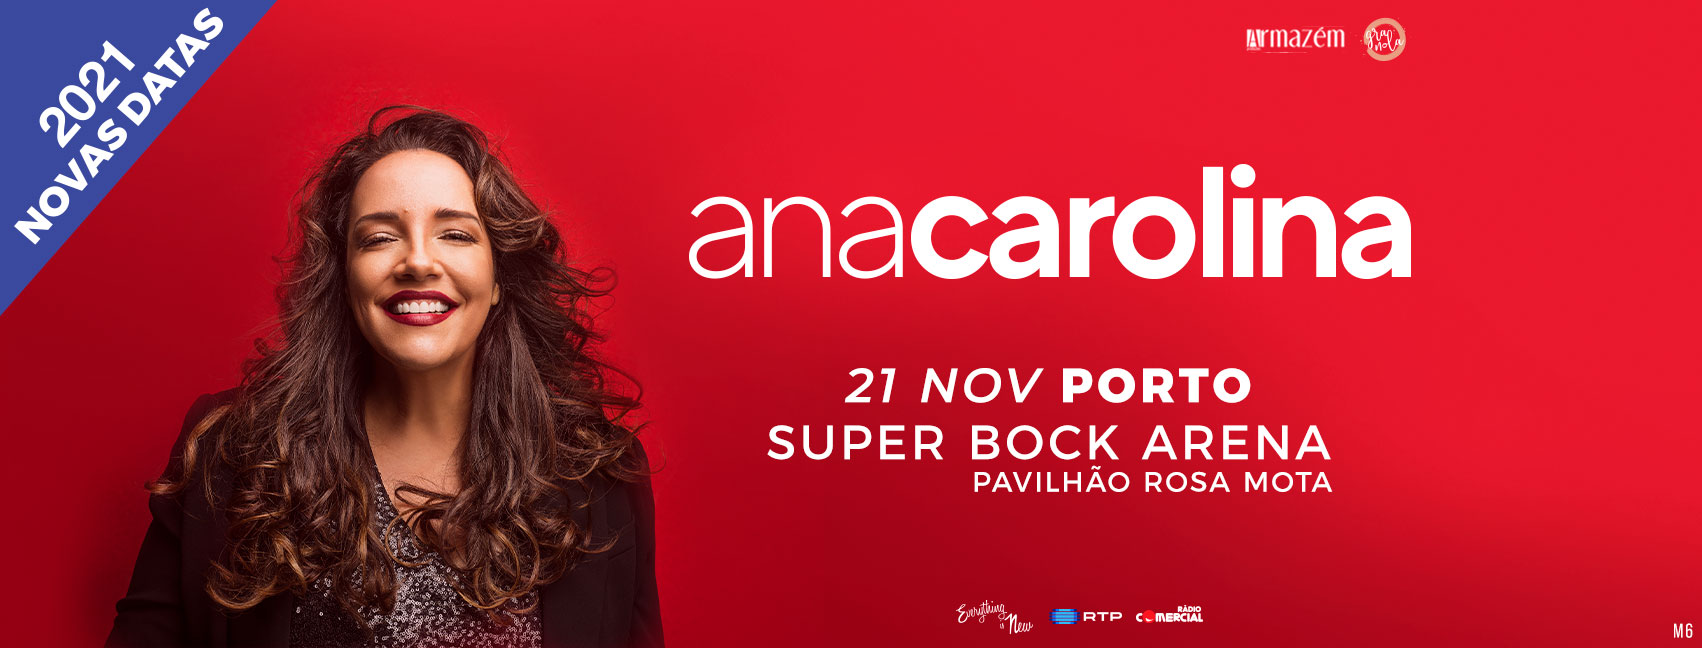 Nova Data: Ana Carolina // Super Bock Arena